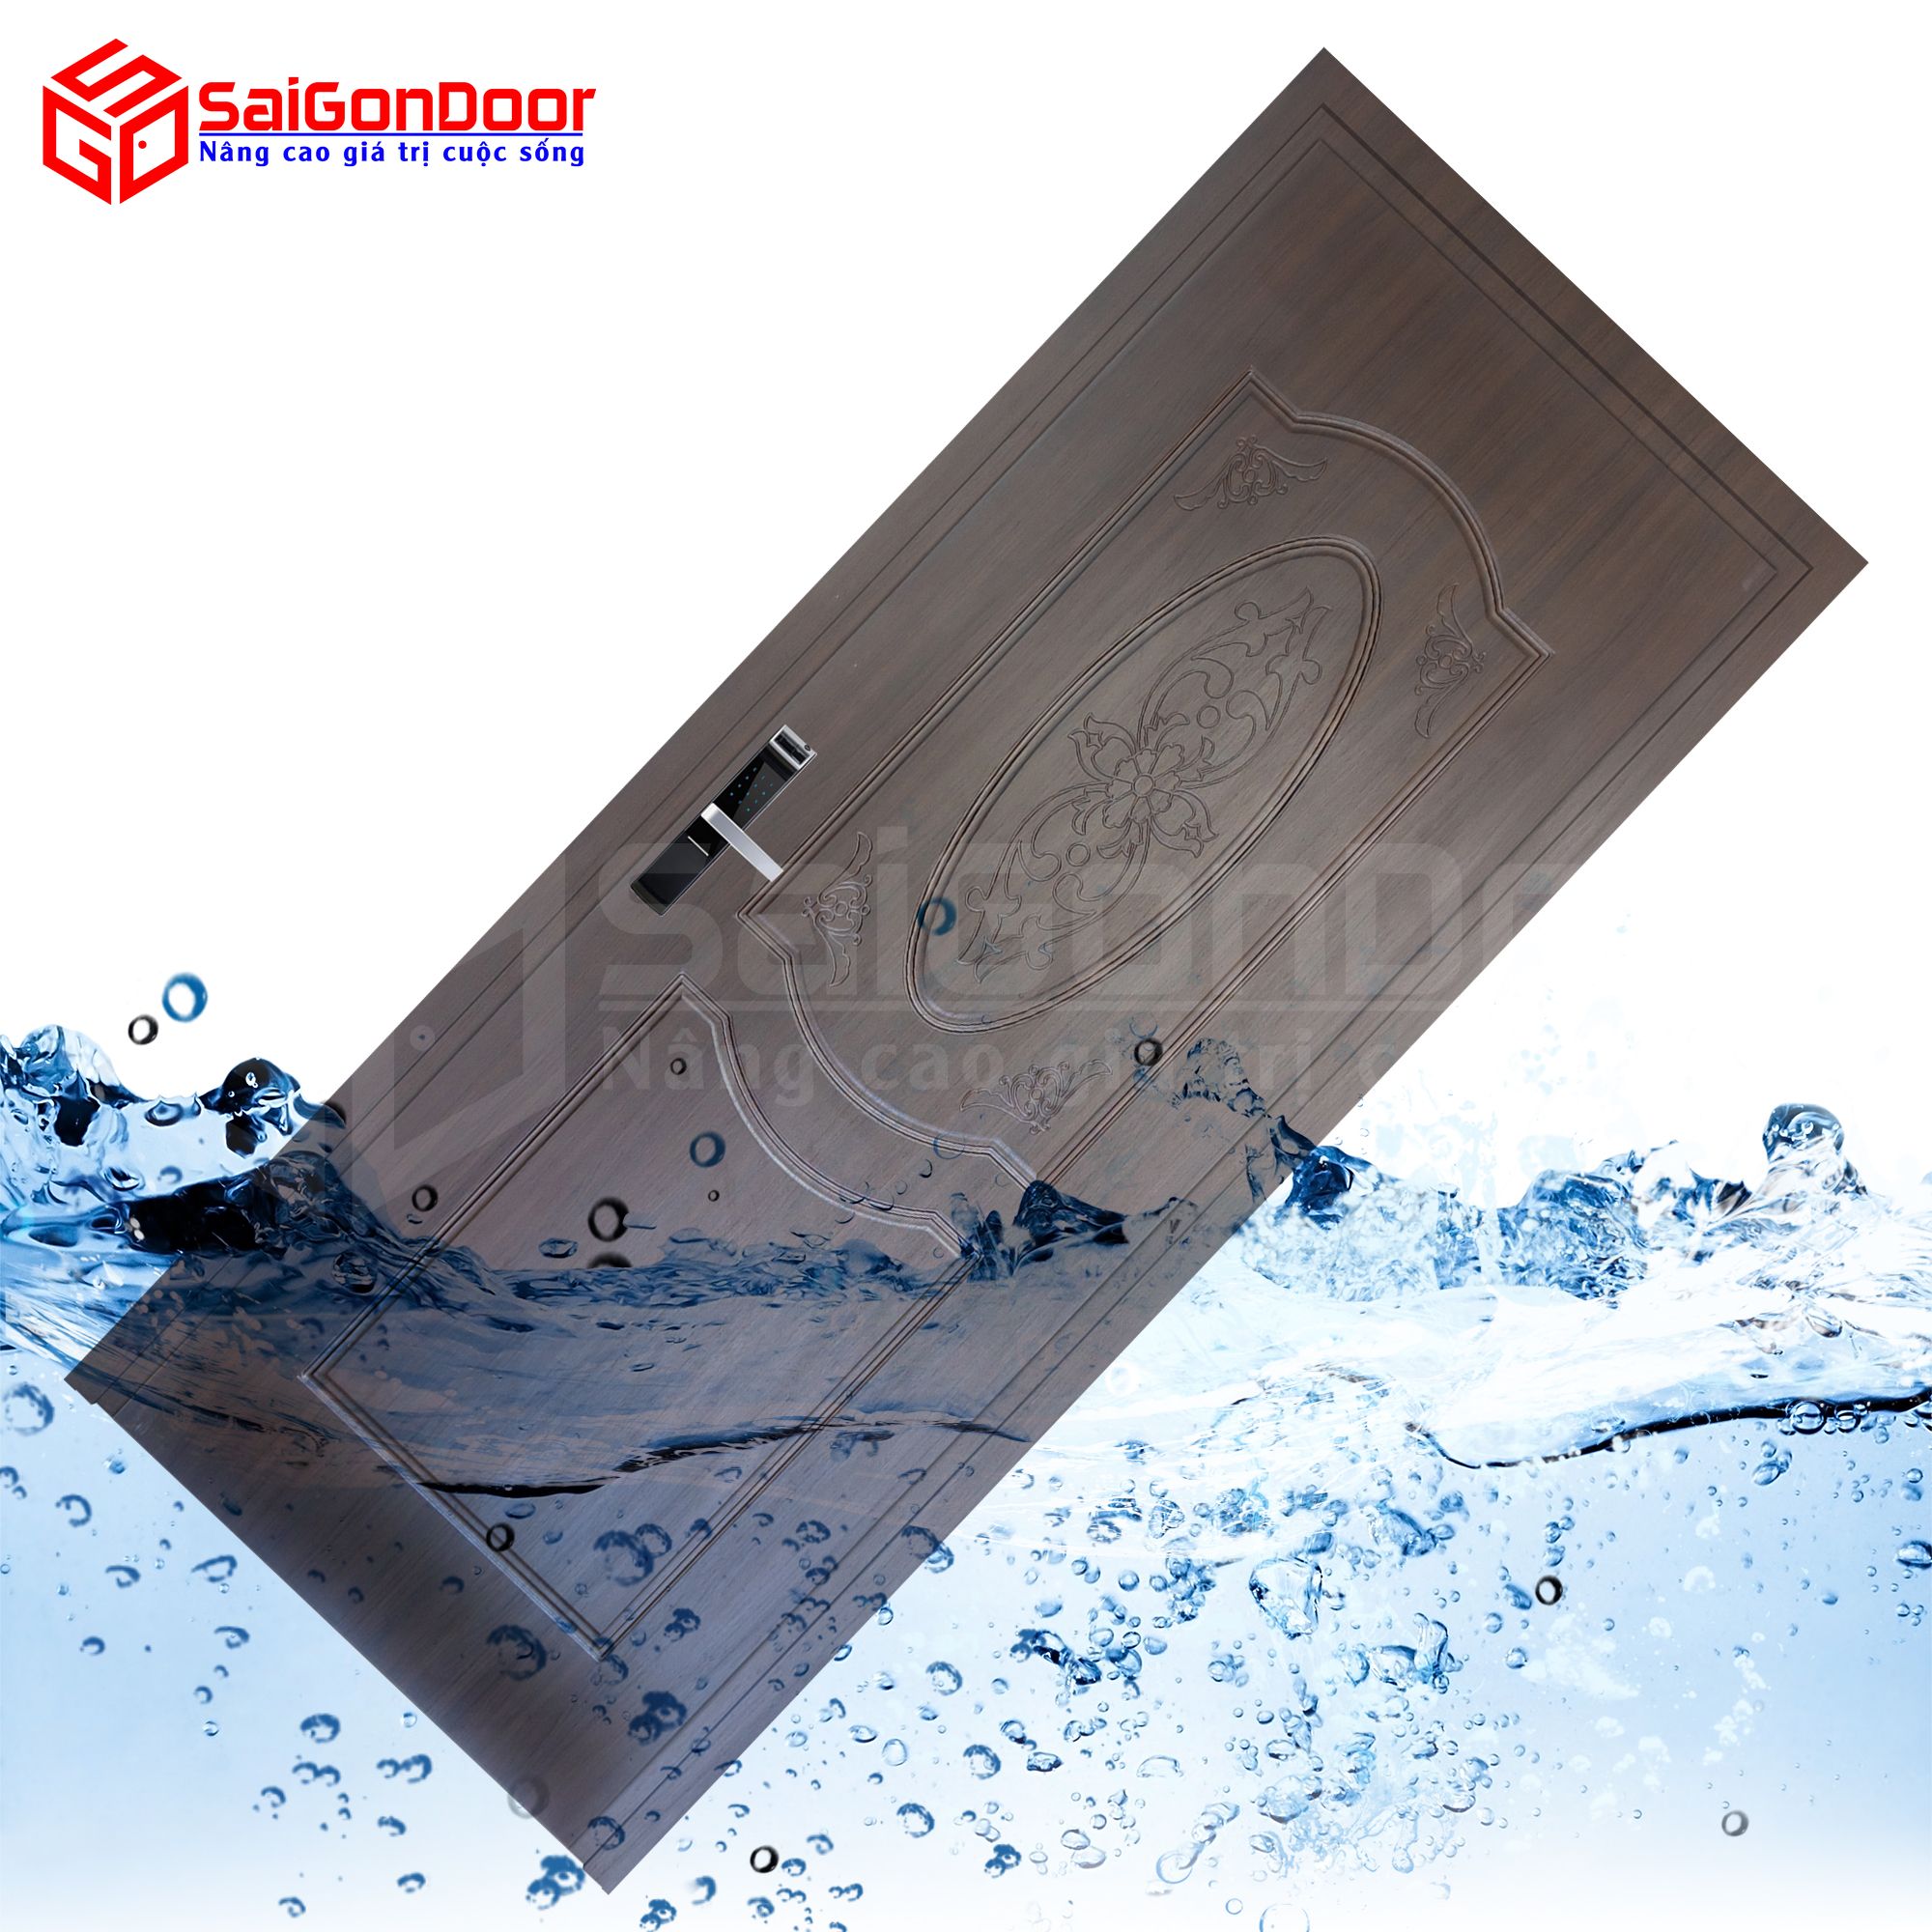 Cửa gỗ chịu nước thường dùng làm cửa nhà vệ sinh hay cửa nhà tắm với khả năng chống nước tuyệt đối